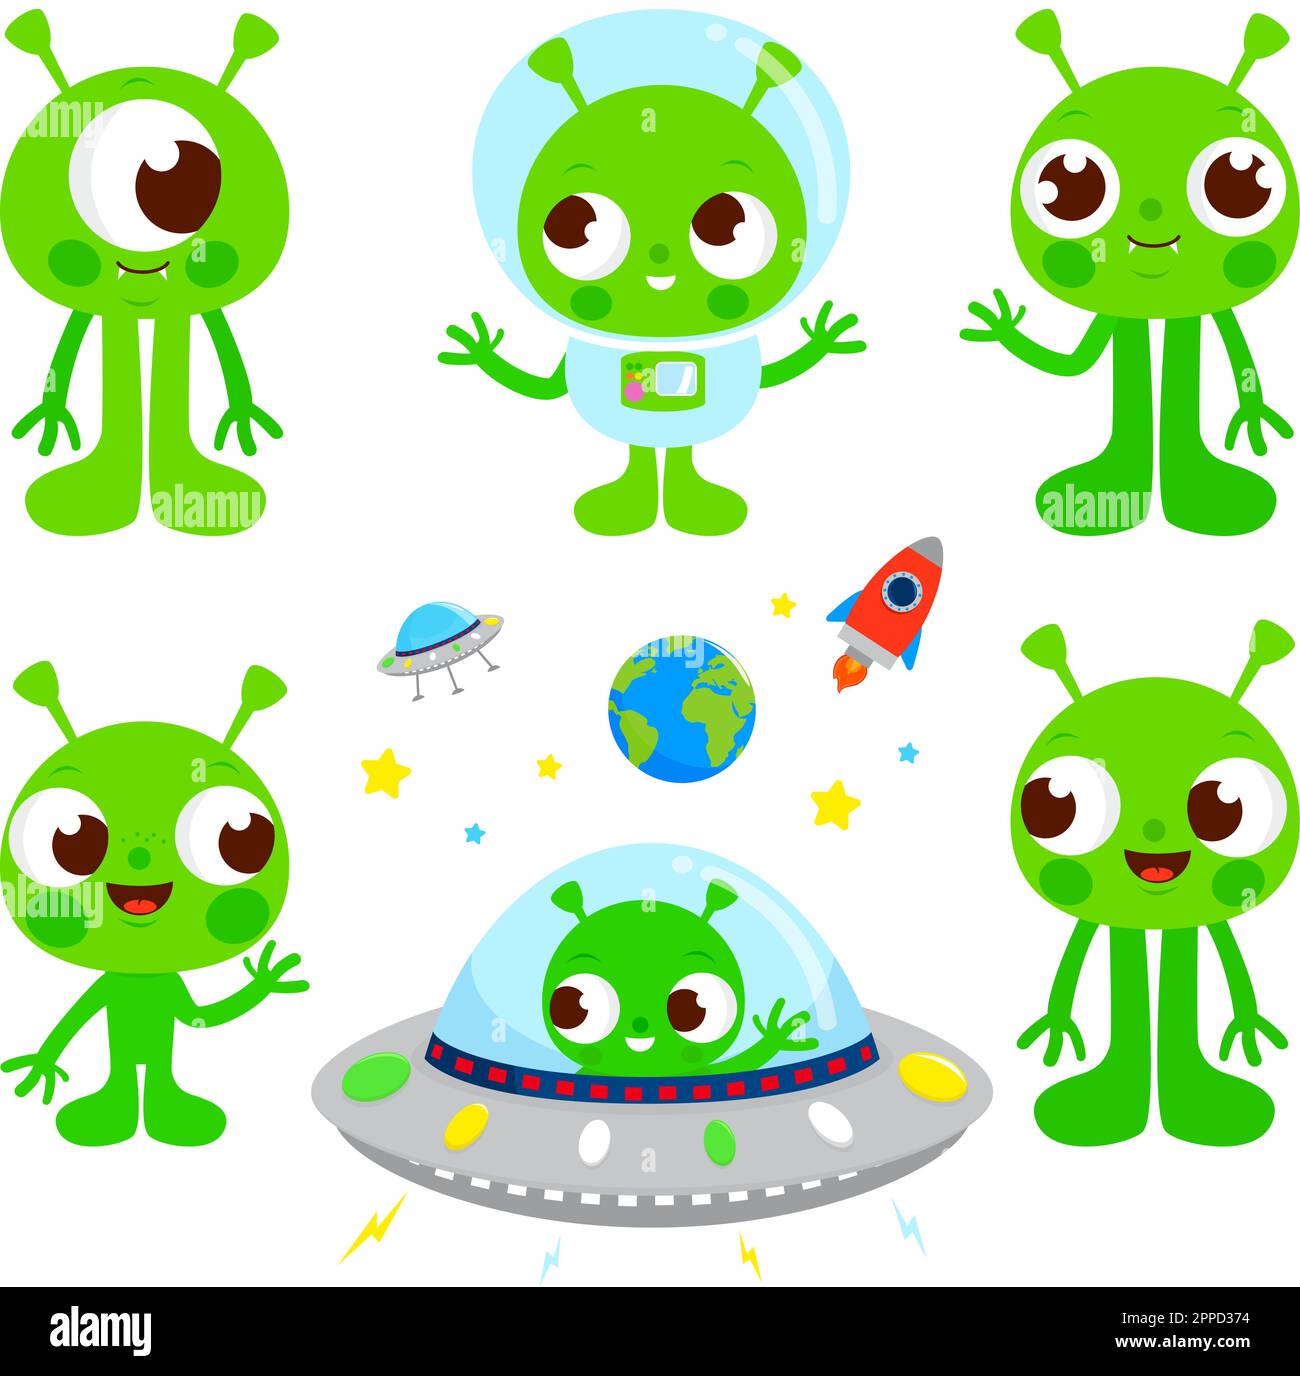 Alieni di cartoni animati immagini e fotografie stock ad alta risoluzione -  Alamy